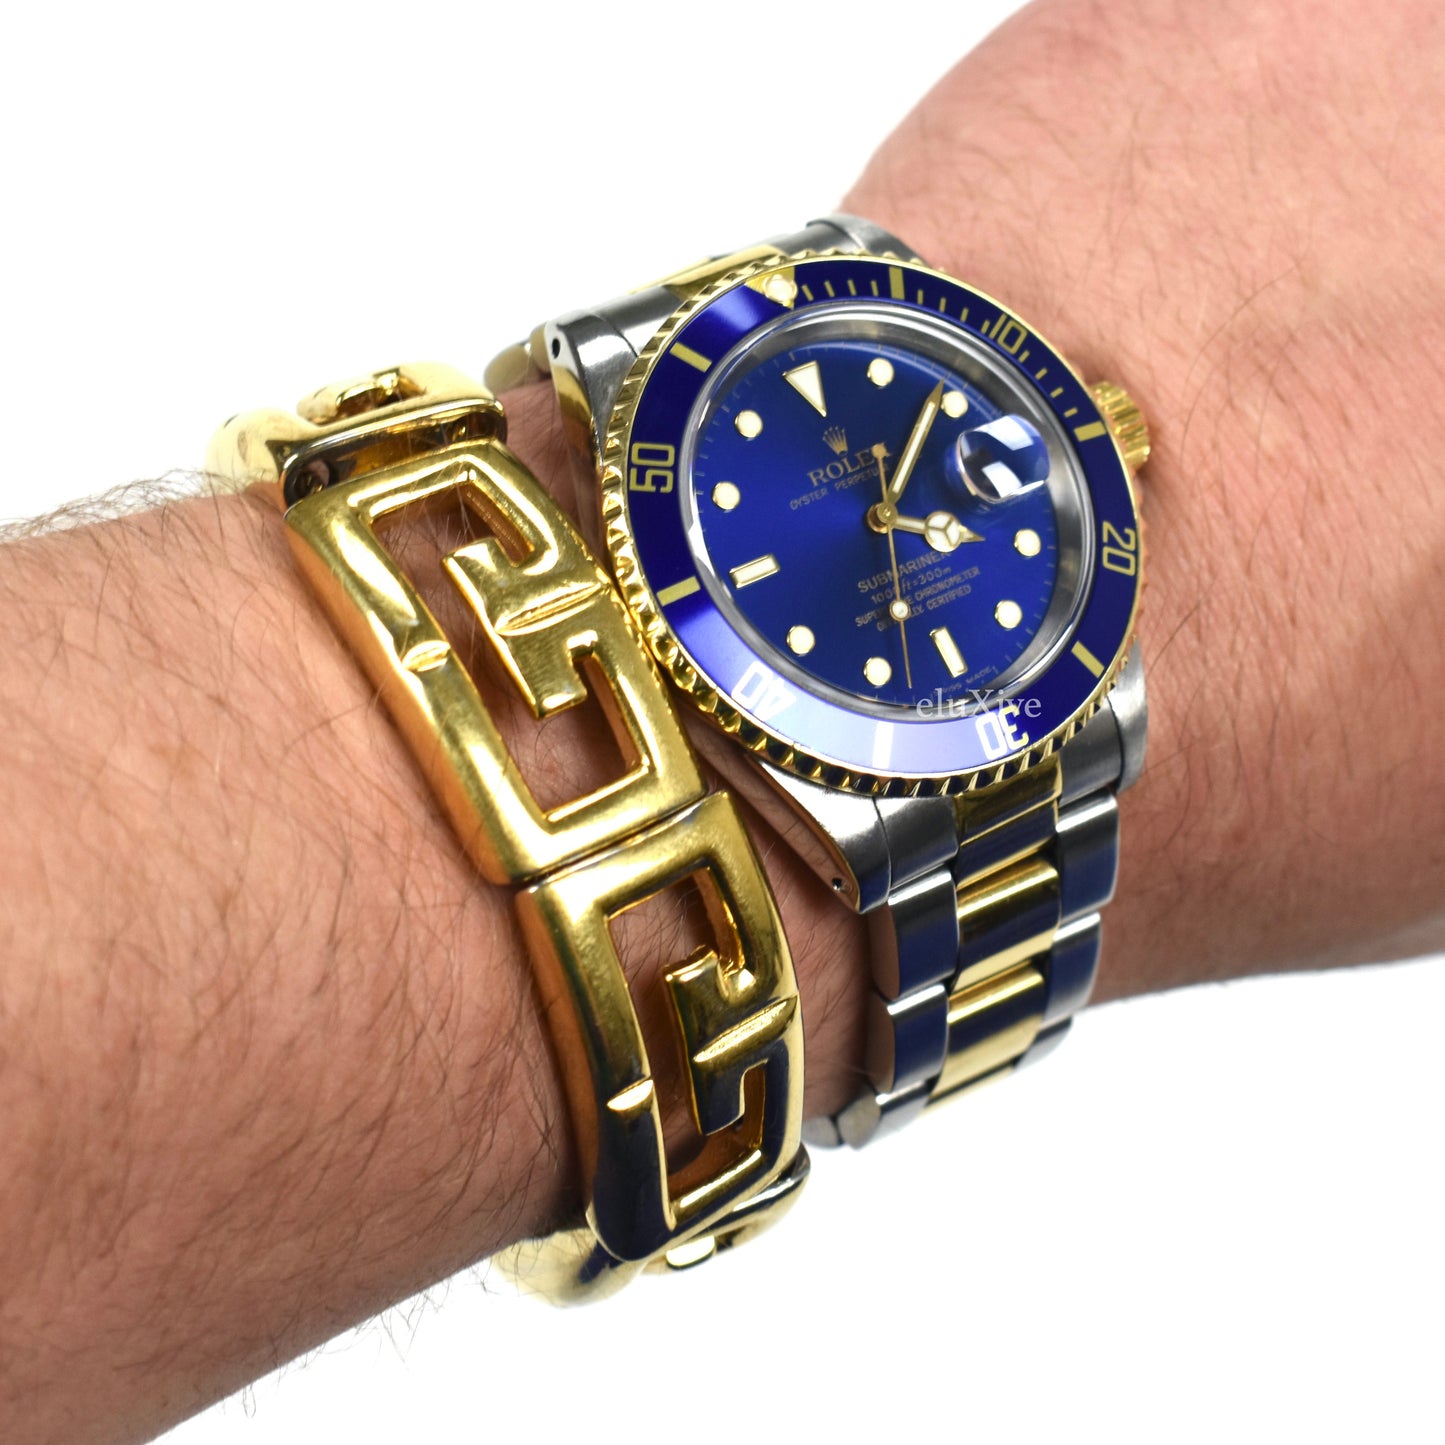 Givenchy - Gold G Logo Cuff Bracelet